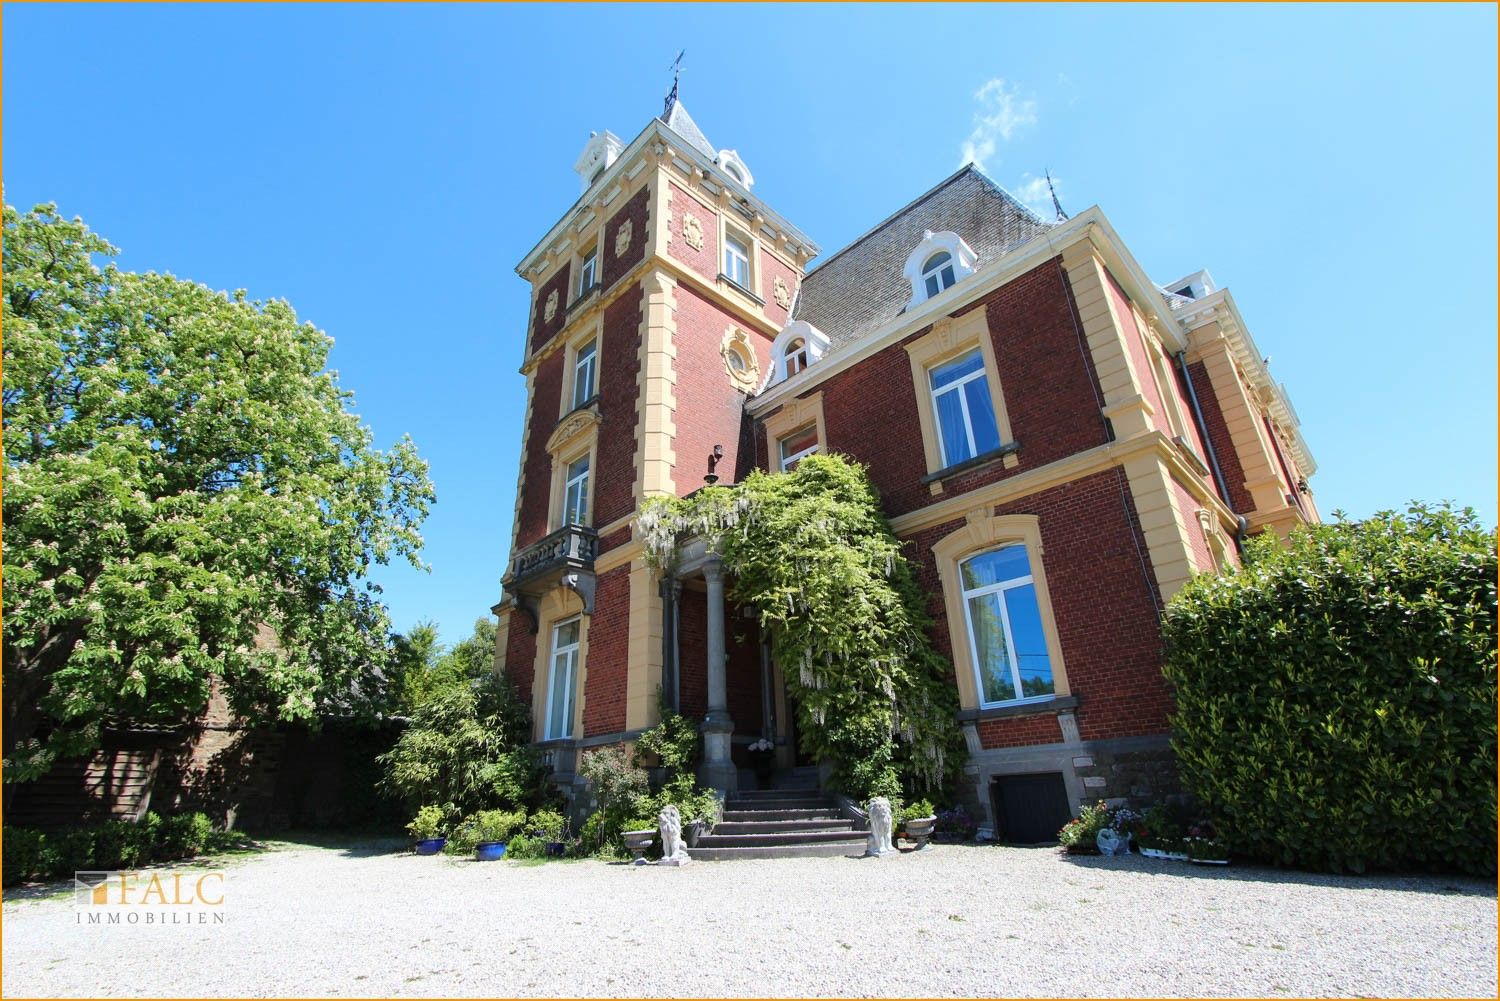 Photos Château Neufais à vendre en Belgique